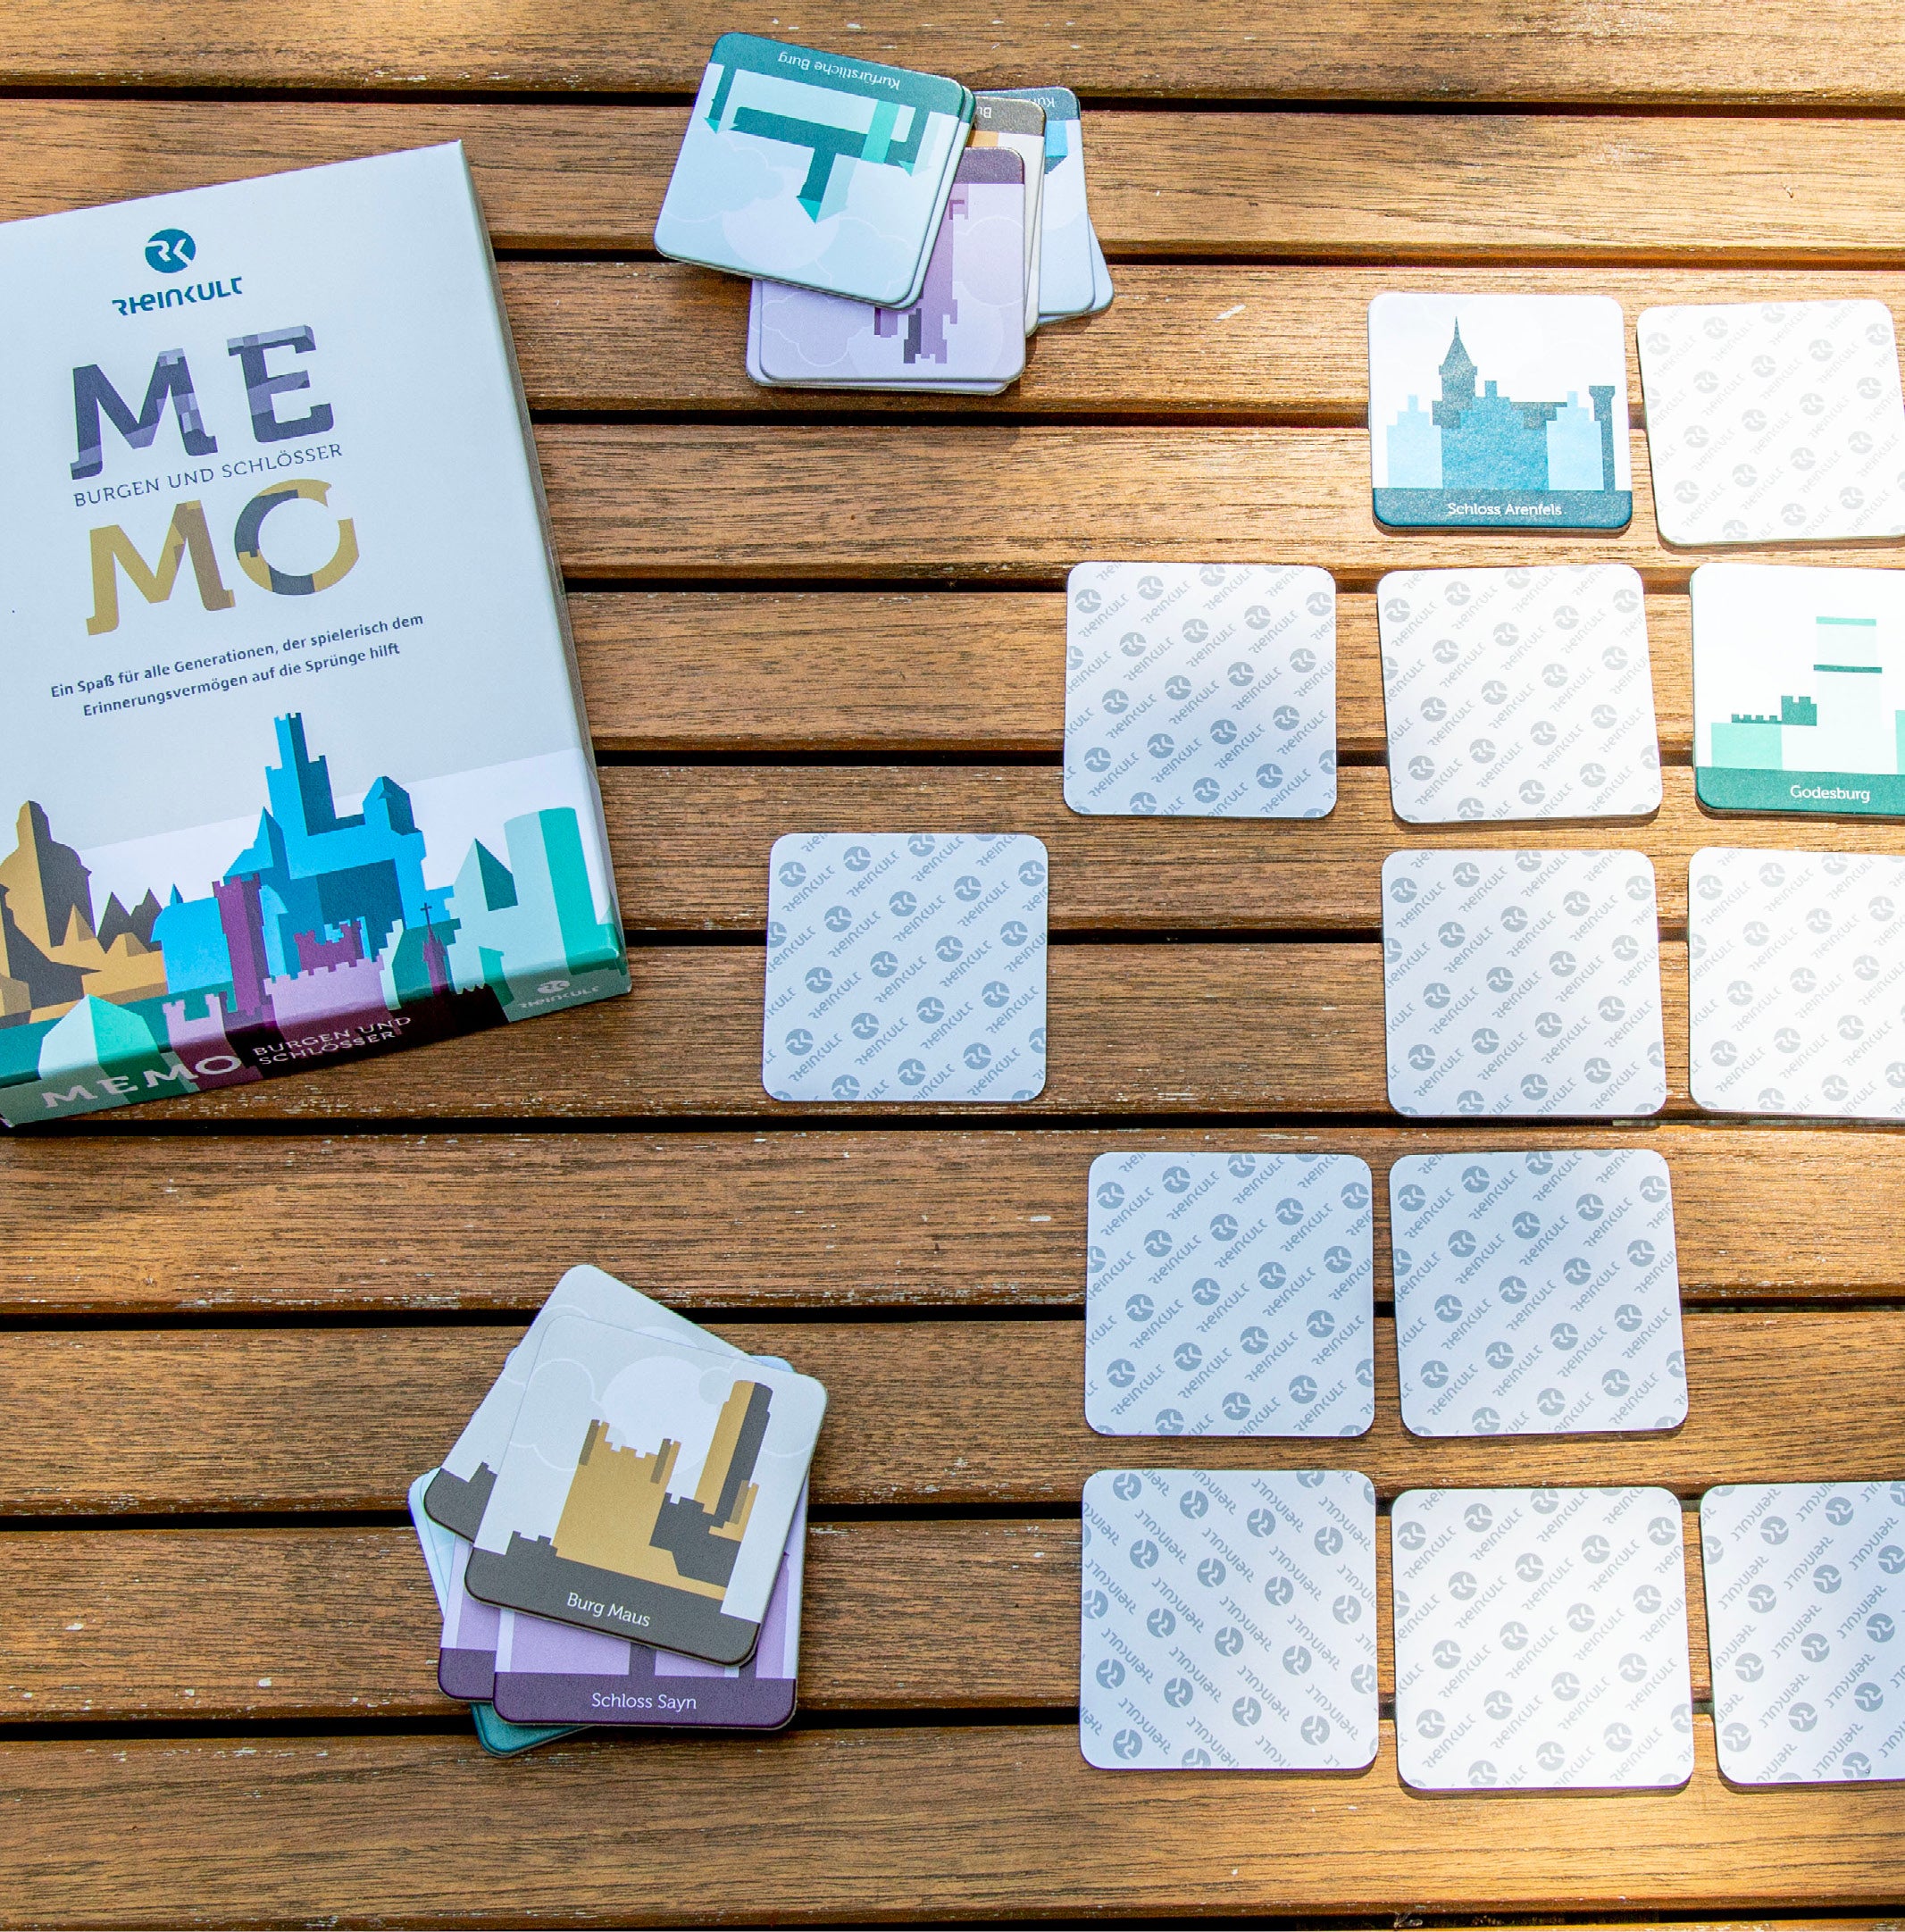 Karten des Rheinkult Memo-Spiels liegen teilweise verdeckt, teilweise gestapelt auf einem Holztisch neben der Verpackung.